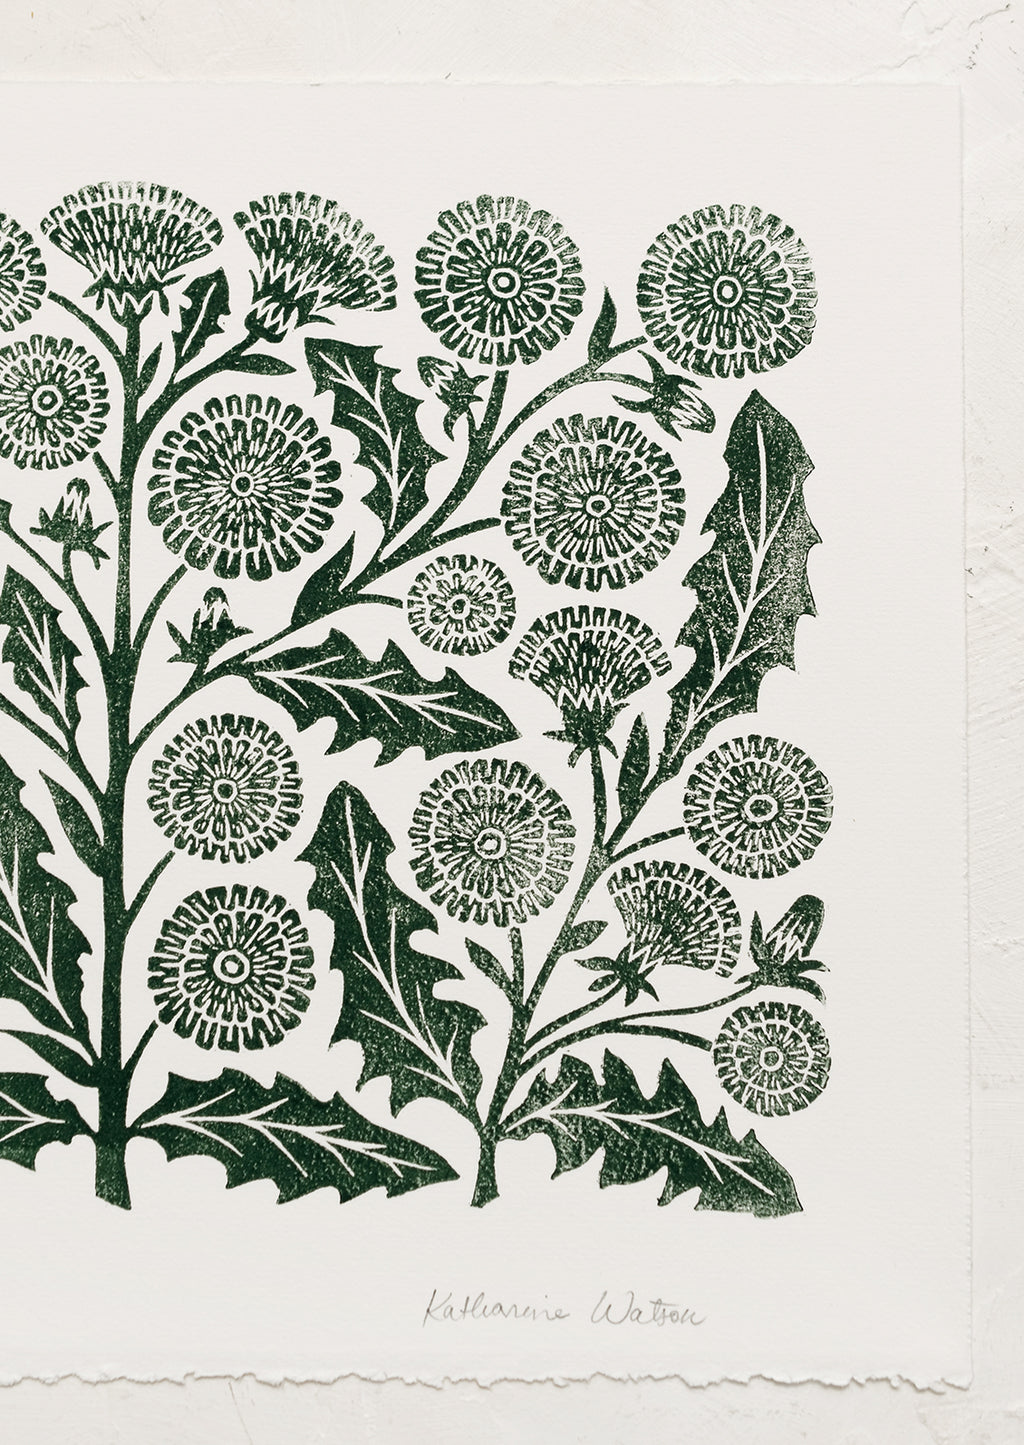 2: A woodblock print of dandelion flowers in dark green ink.